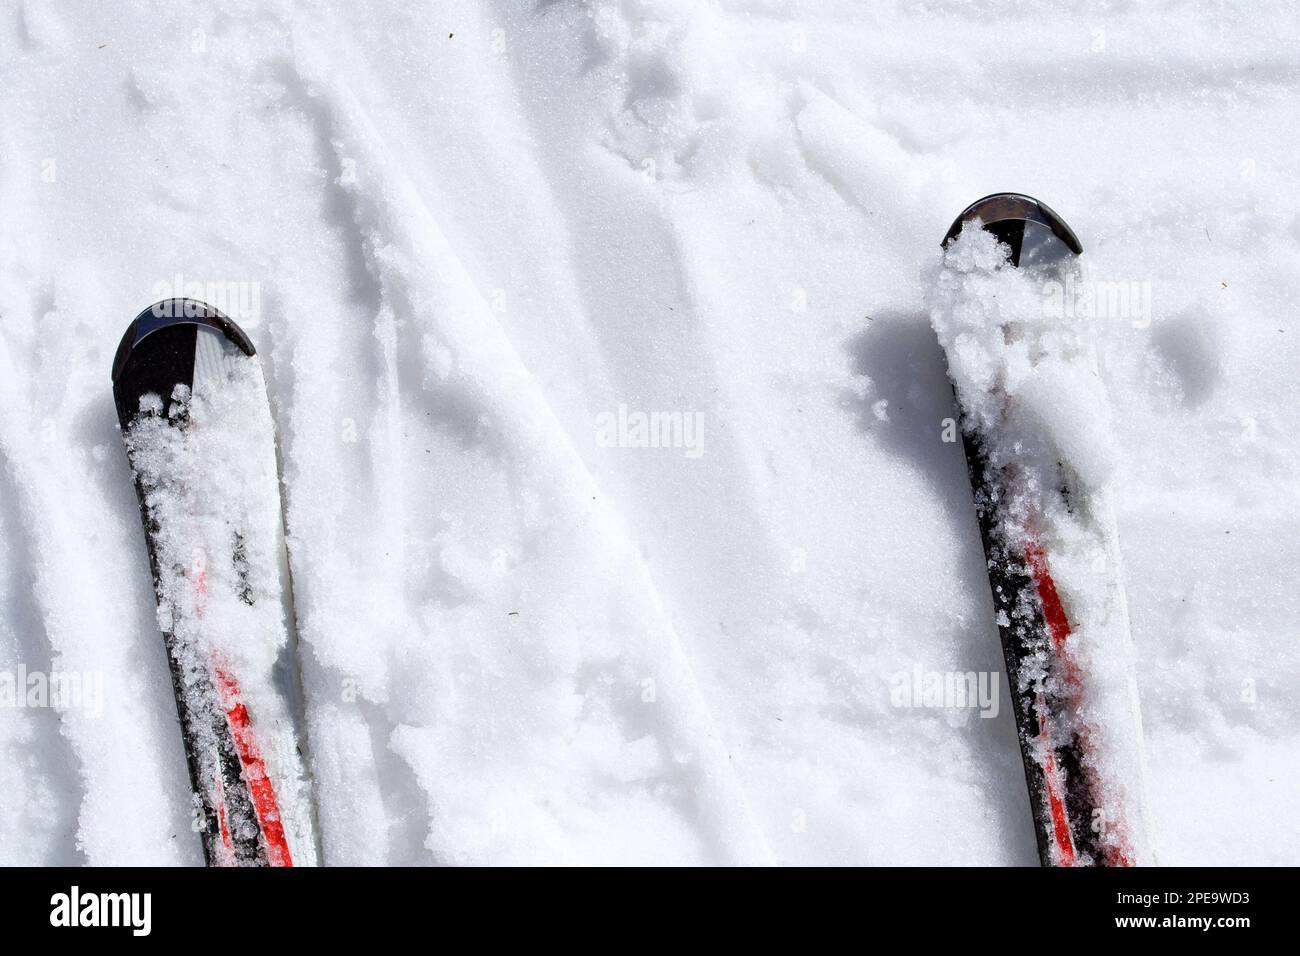 Skis dans la neige humide Banque D'Images